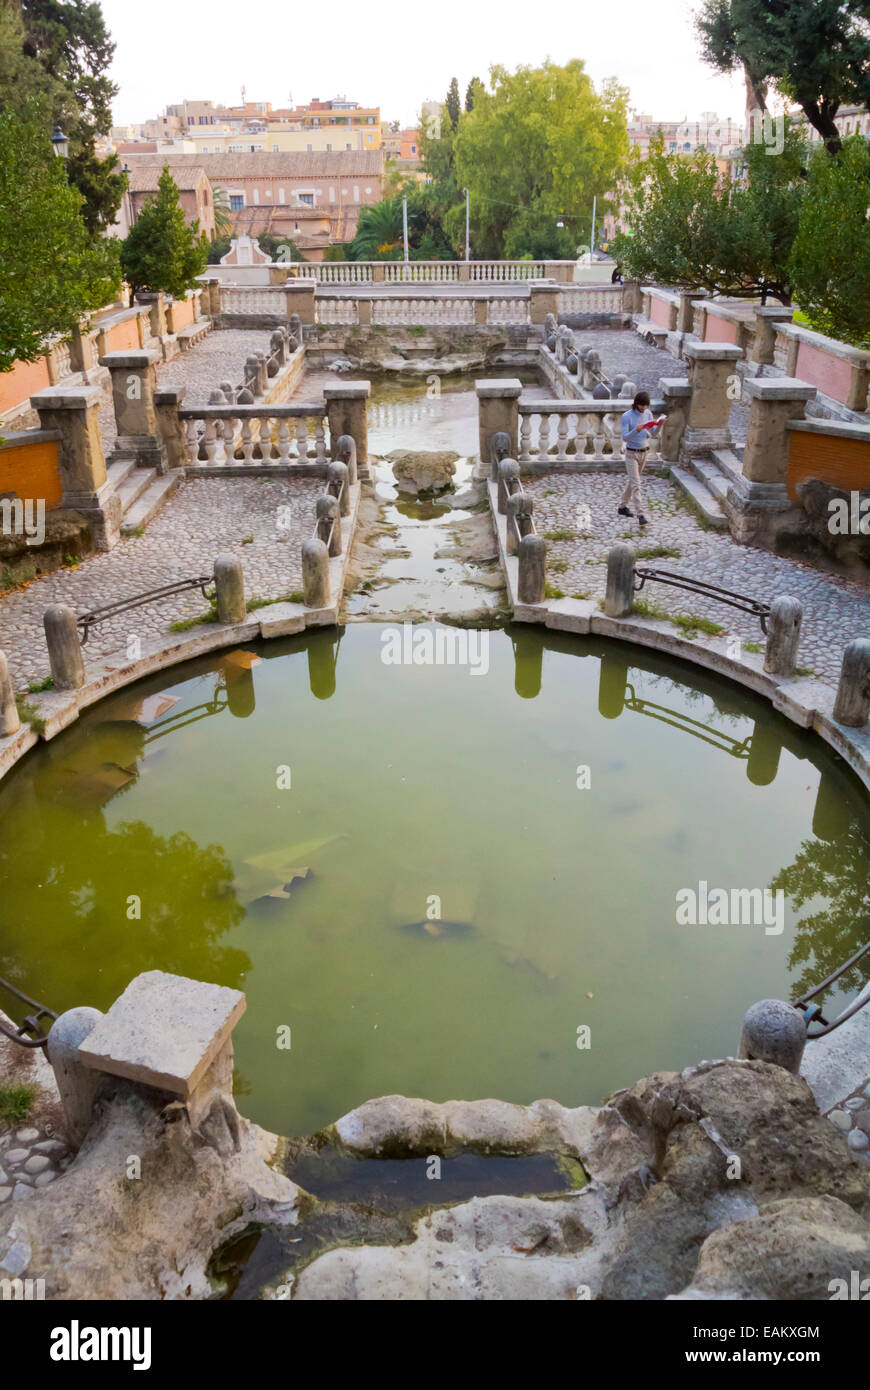 Terme di Traiano, baños de Trajano, Parco delle Colle Oppio, distrito de  Monti, Roma, Italia Fotografía de stock - Alamy